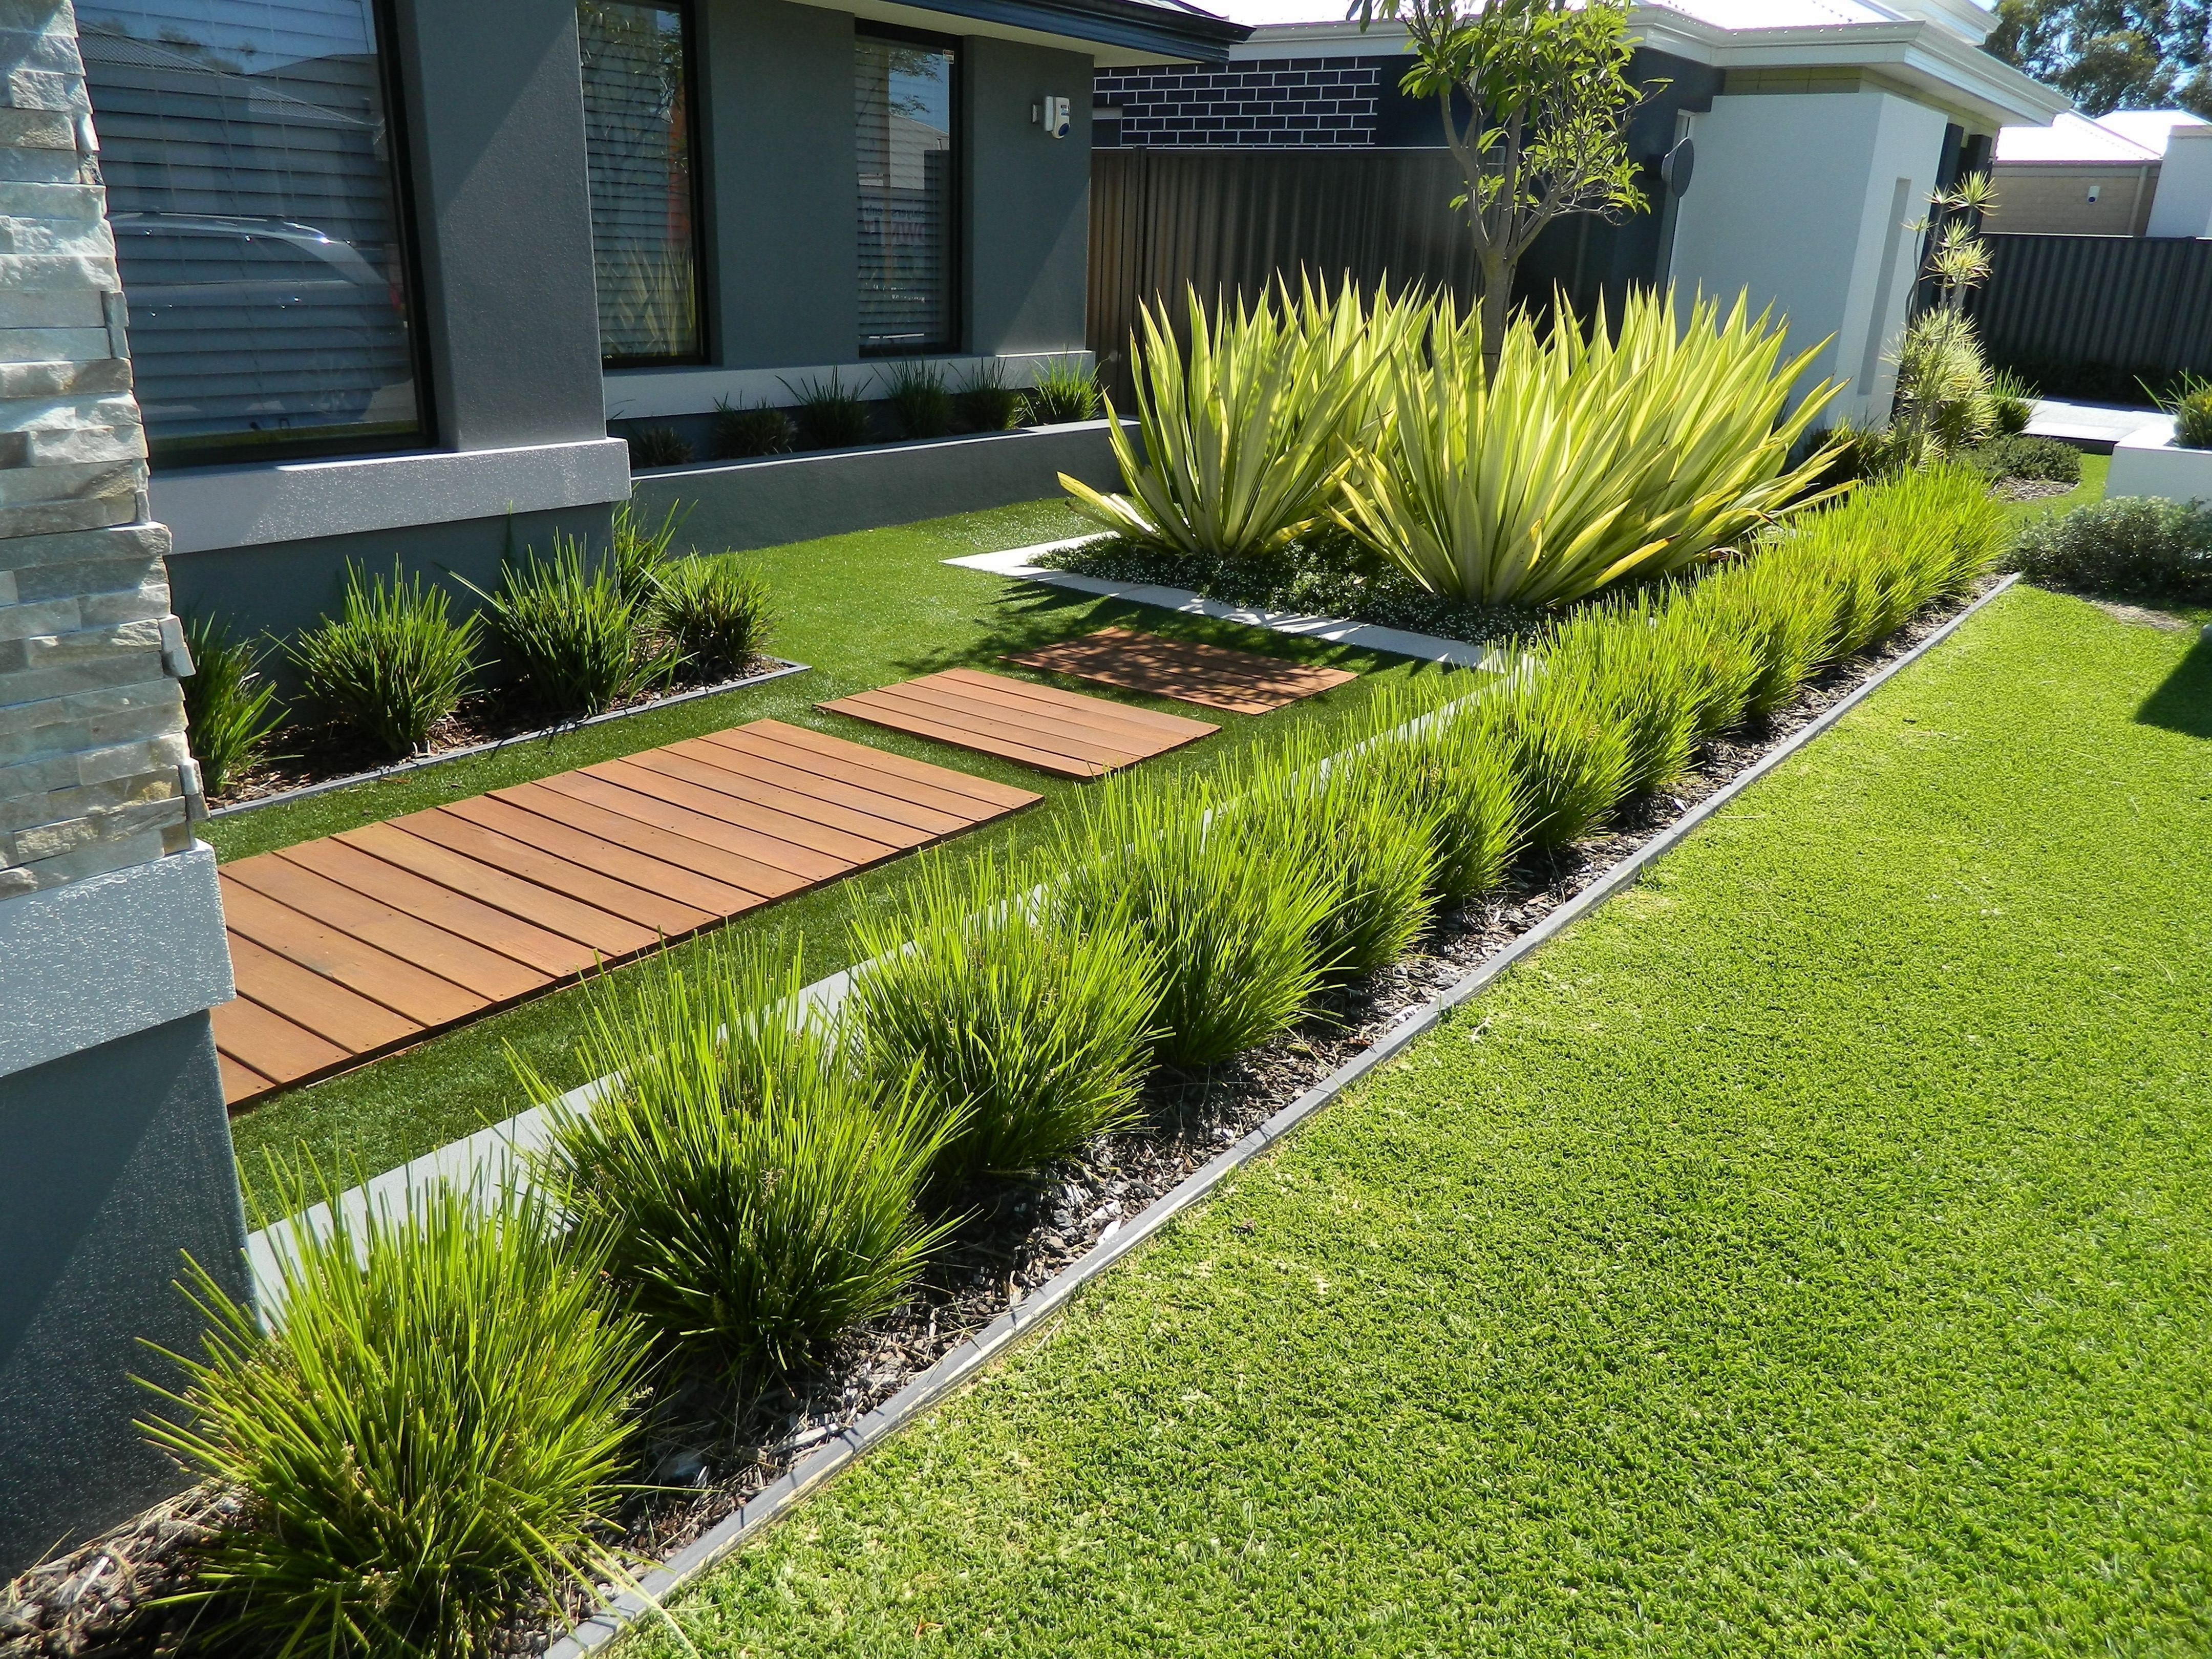 12 Minimalist Front Garden Design Ideas To Inspire You -   8 garden design Minimalist ideas